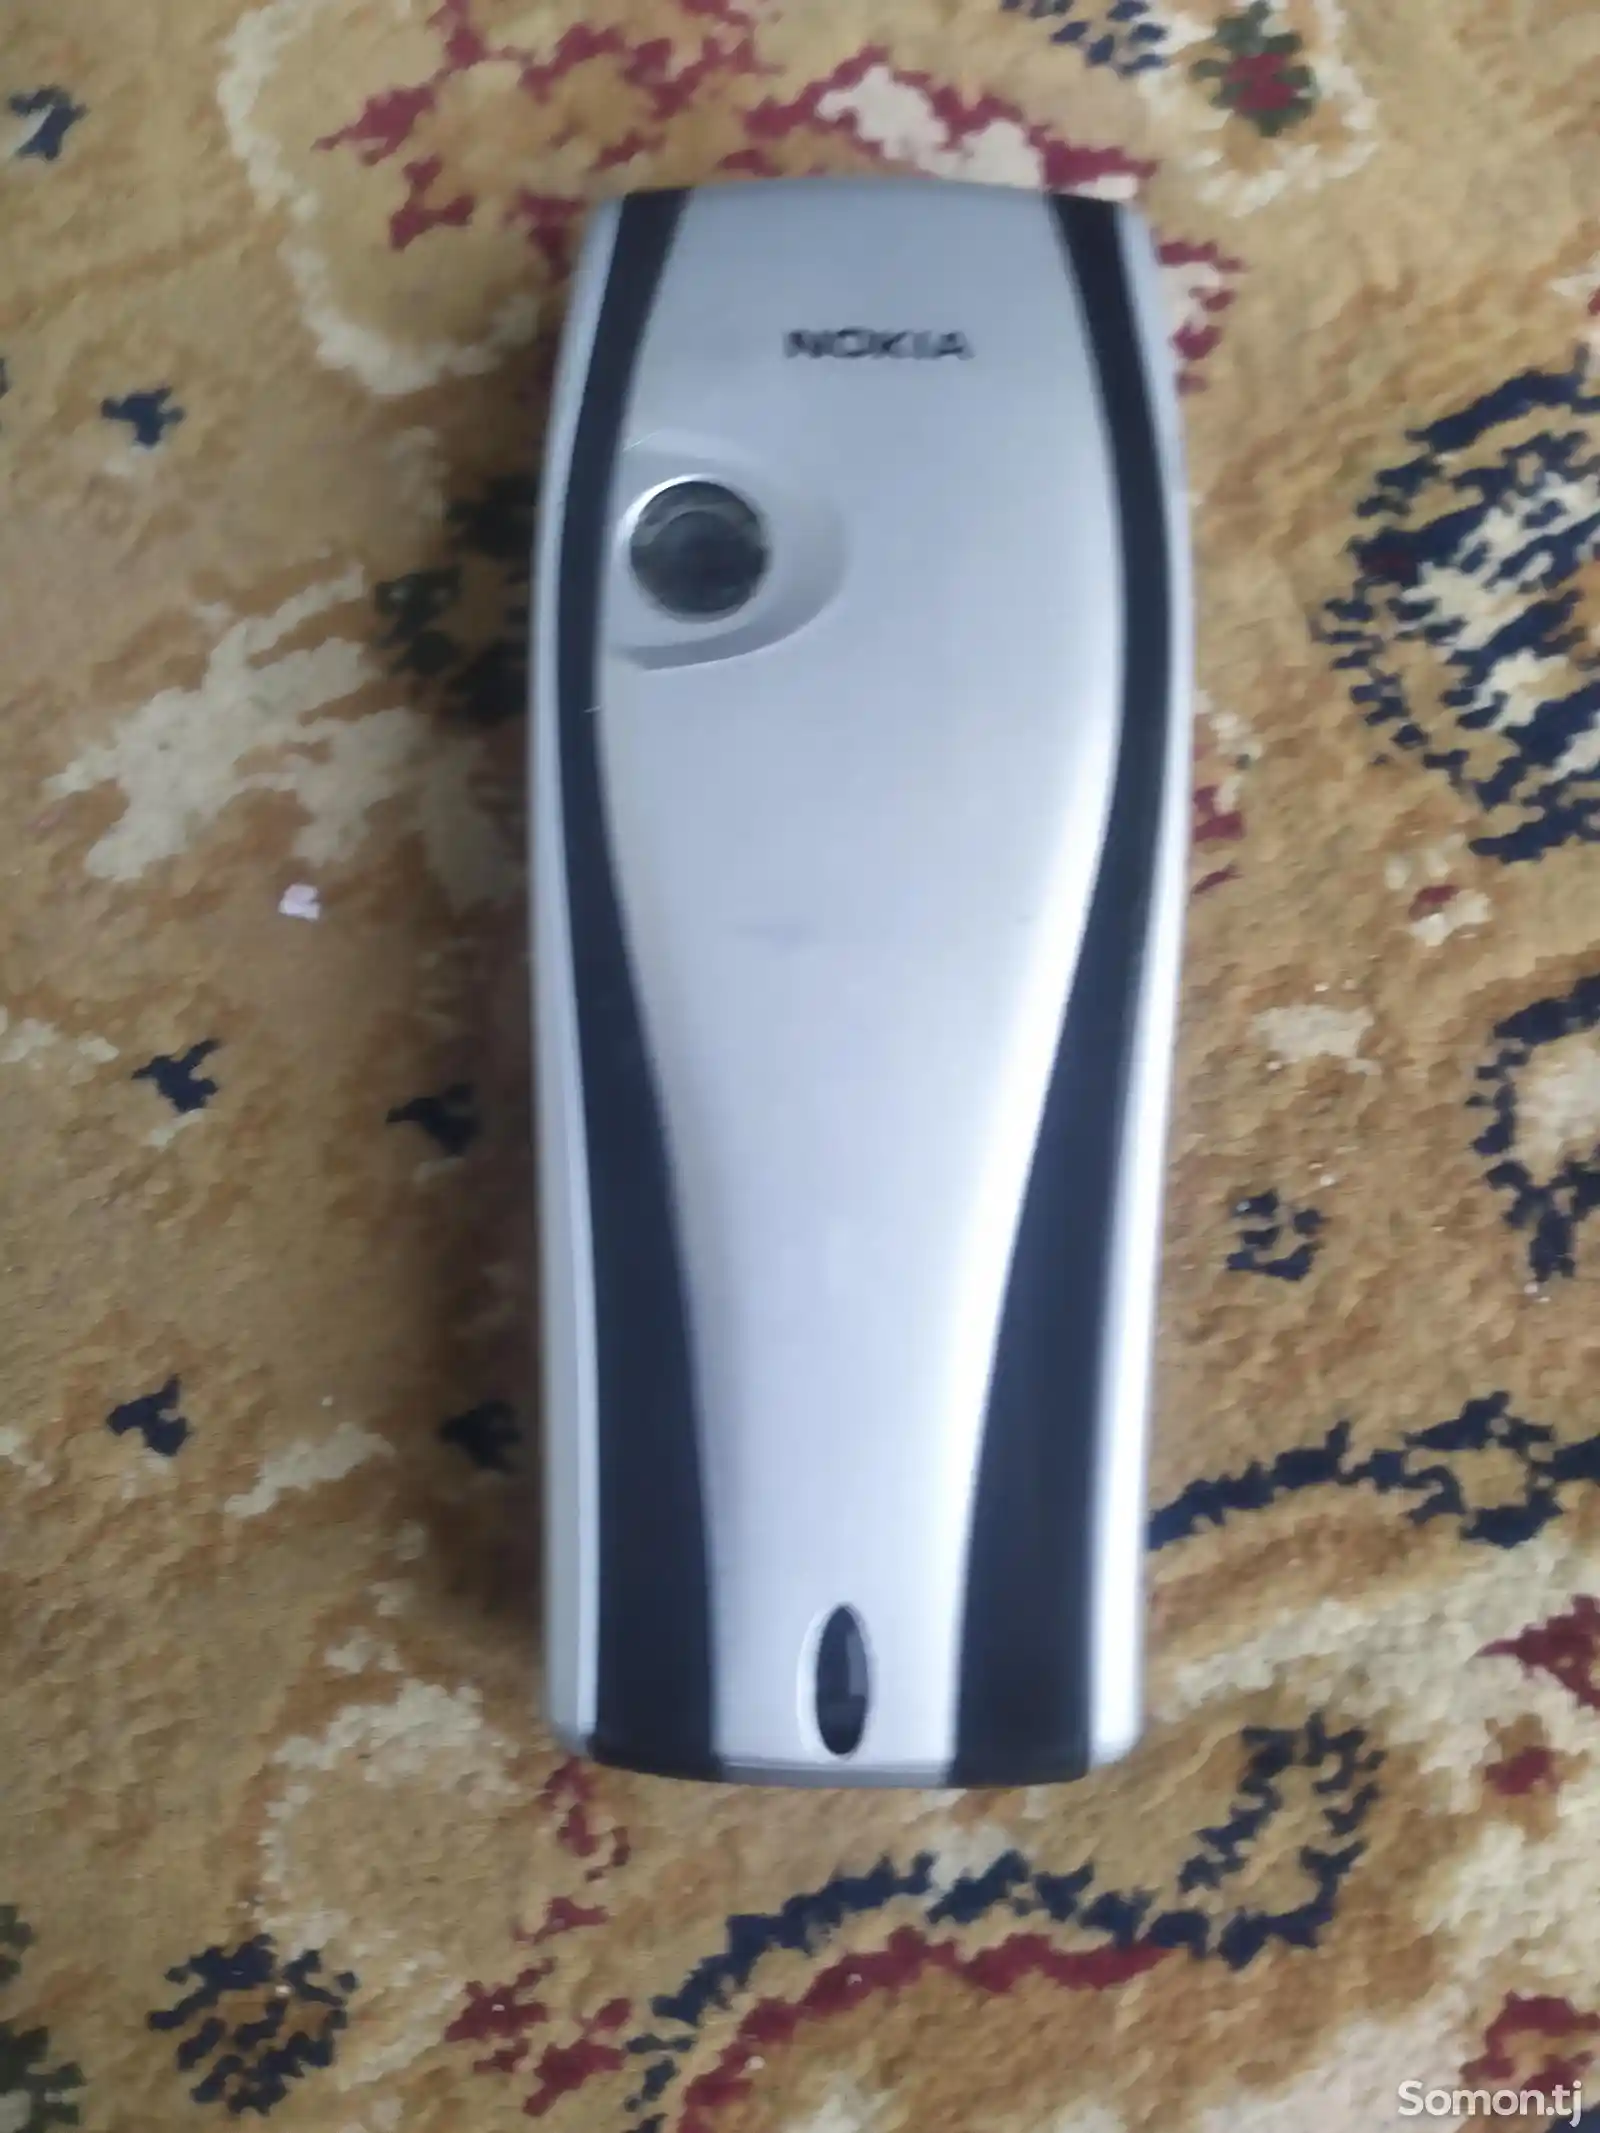 Nokia 6610-2